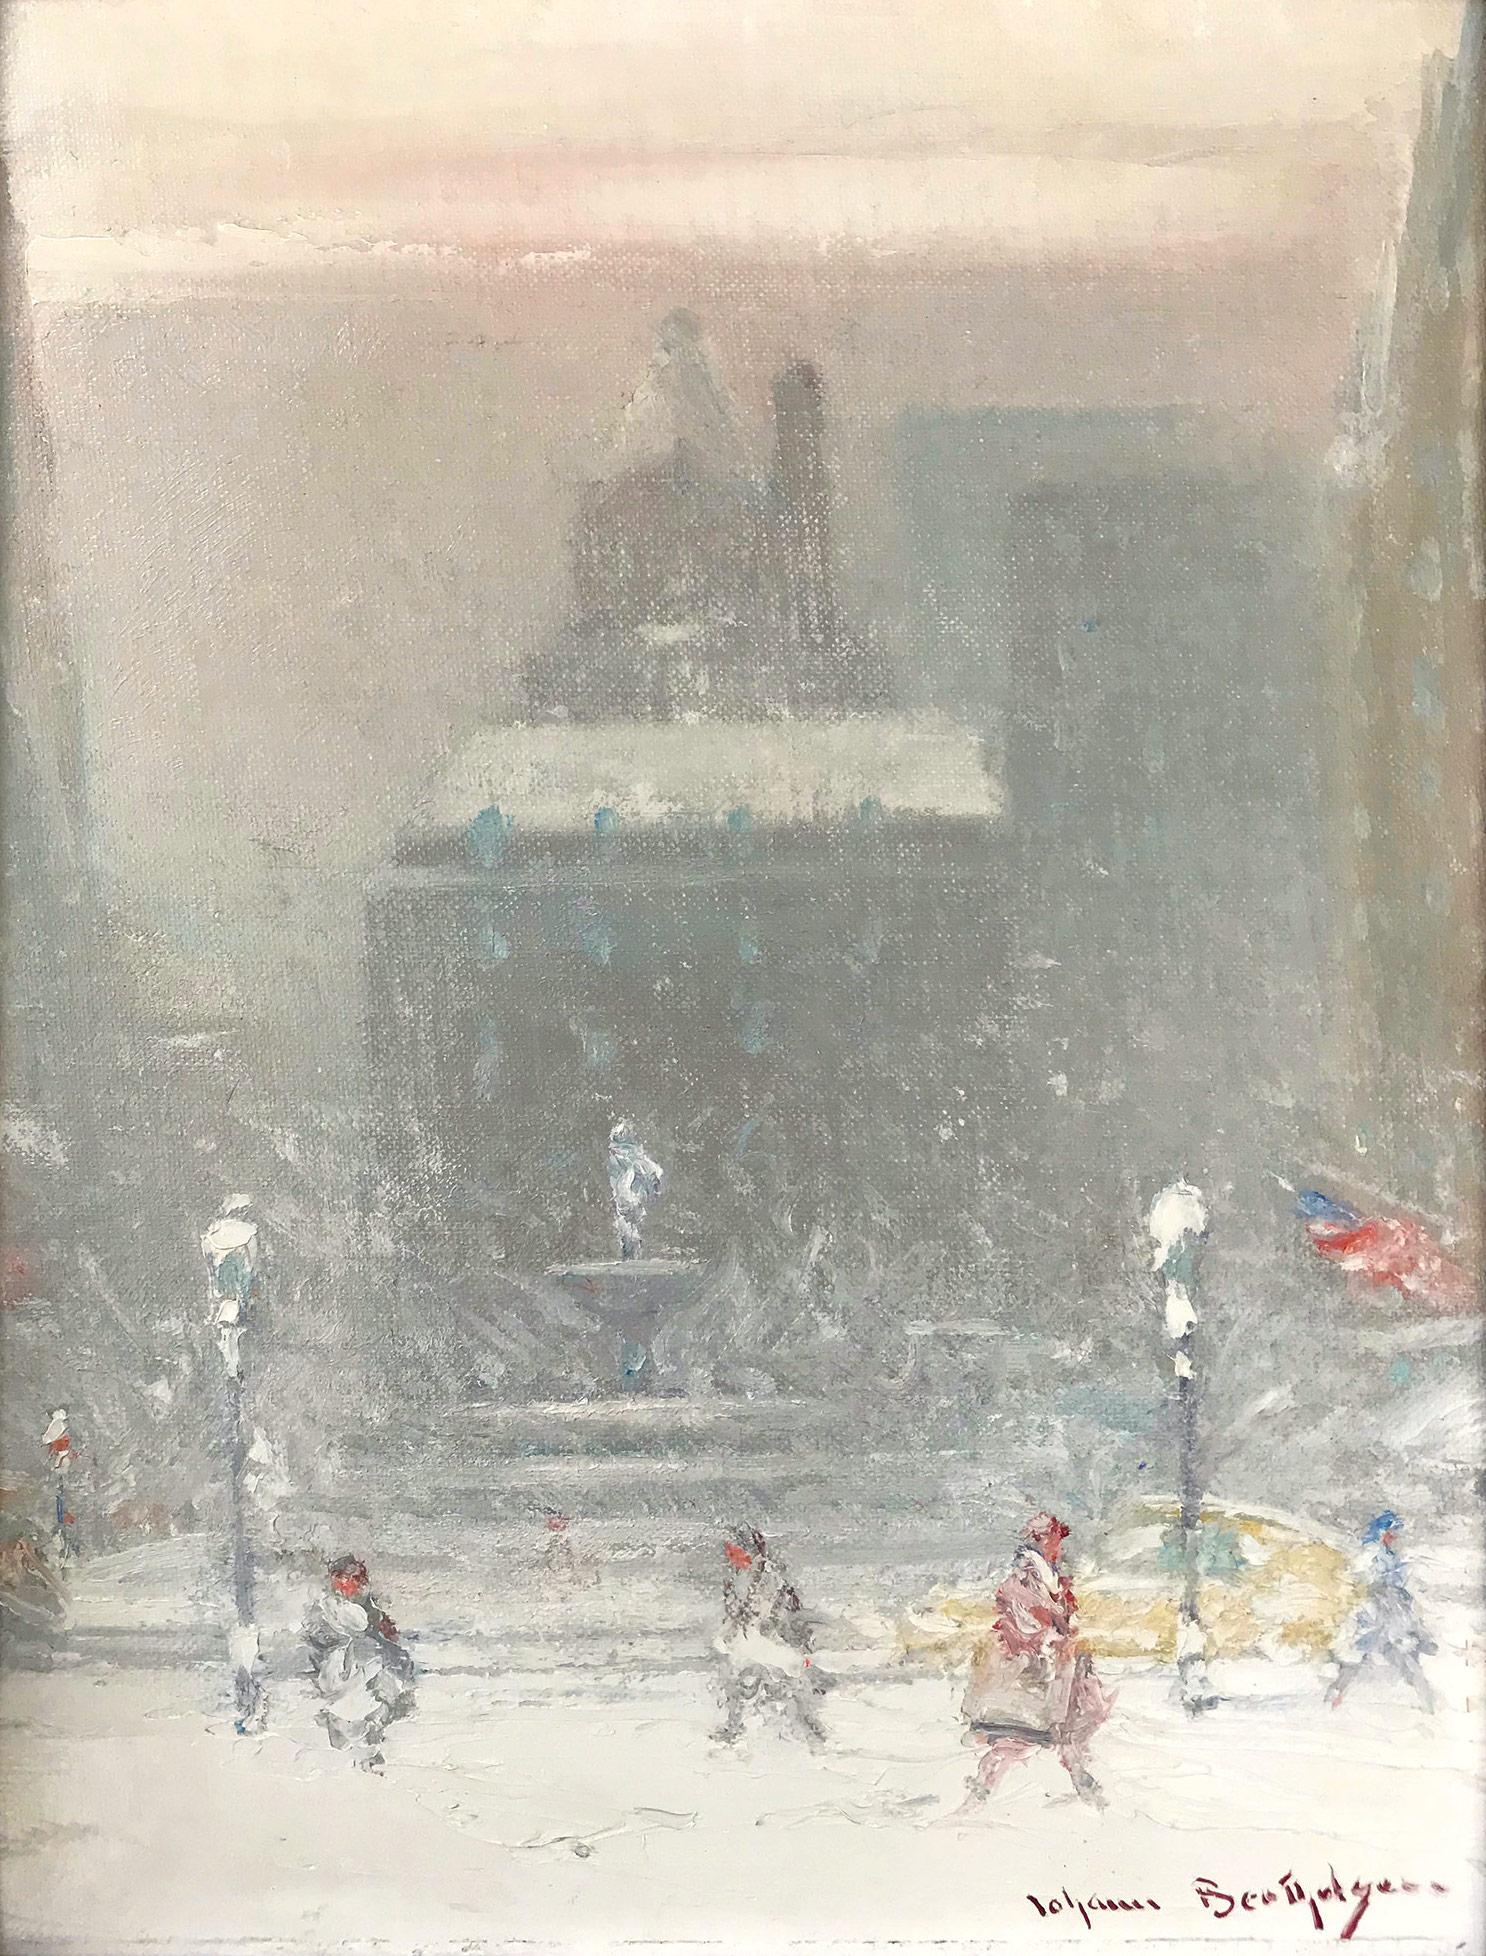 Impressionistische Winterstraßensszene, Öl auf Leinwand, „The Grand Army Plaza in Winter“ – Painting von Johann Berthelsen